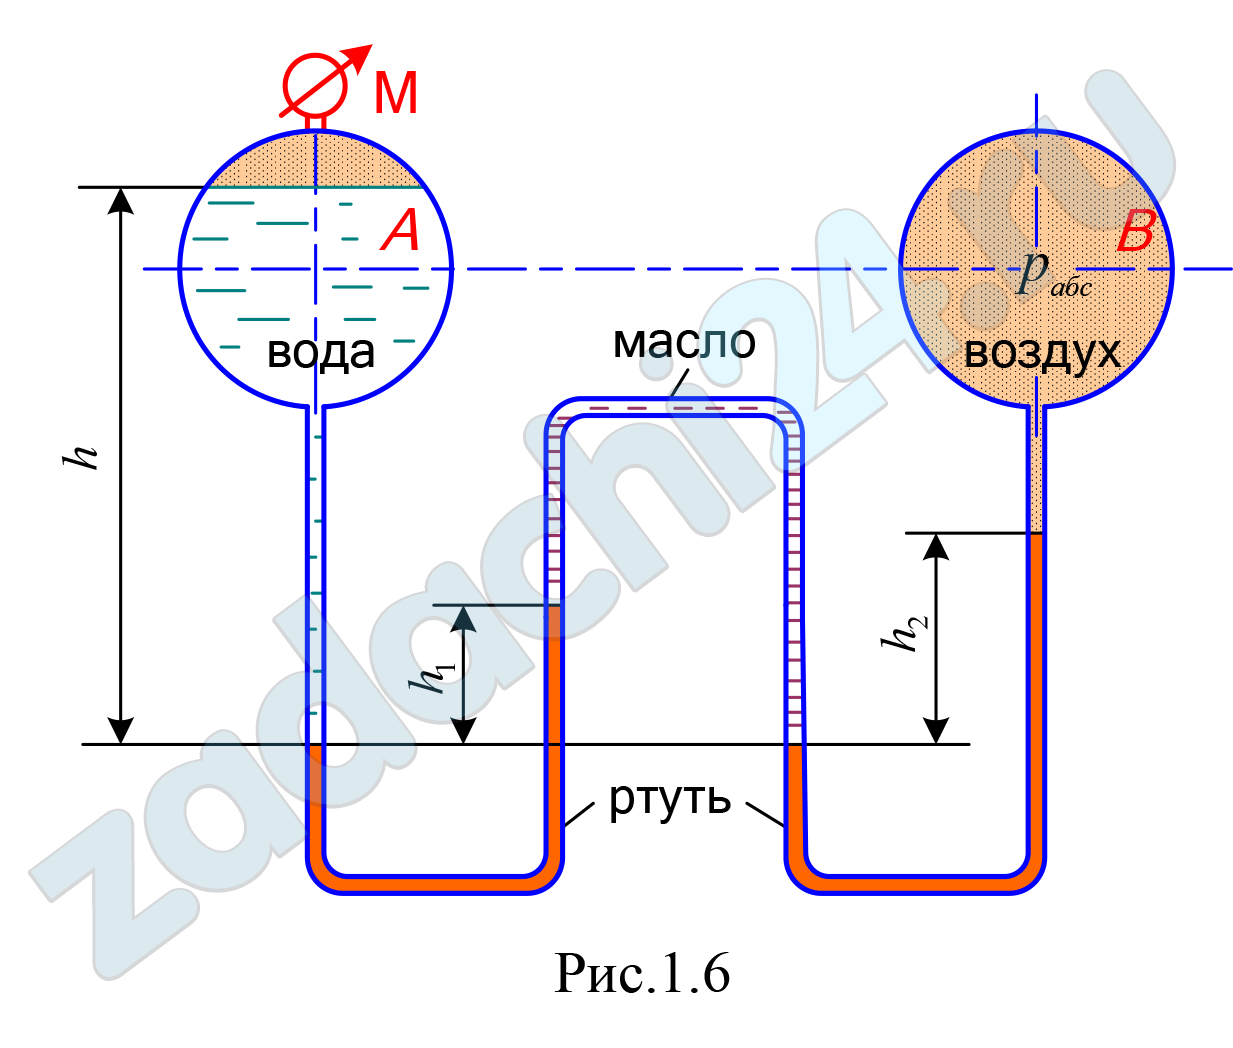 Два резервуара А и В, линии центров которых совпадают, соединены двухколенным ртутным манометром (рис. 1.6). Определить показание манометра на поверхности воды в резервуаре А, если абсолютное давление воздуха в резервуаре В – рабс, высоты уровней ртути в дифференциальном манометре h1 и h2. Уровень ртути в левом колене расположен ниже уровня воды в резервуаре А на величину h. Пространство между уровнями ртути в манометре заполнено маслом плотностью ρмасл = 880 кг/м³. Плотность ртути ρрт = 13,6·10³ кг/м³; воды ρ = 10³ кг/м³. Плотностью воздуха при расчетах можно пренебречь. Атмосферное давление считать равным 1 ат.